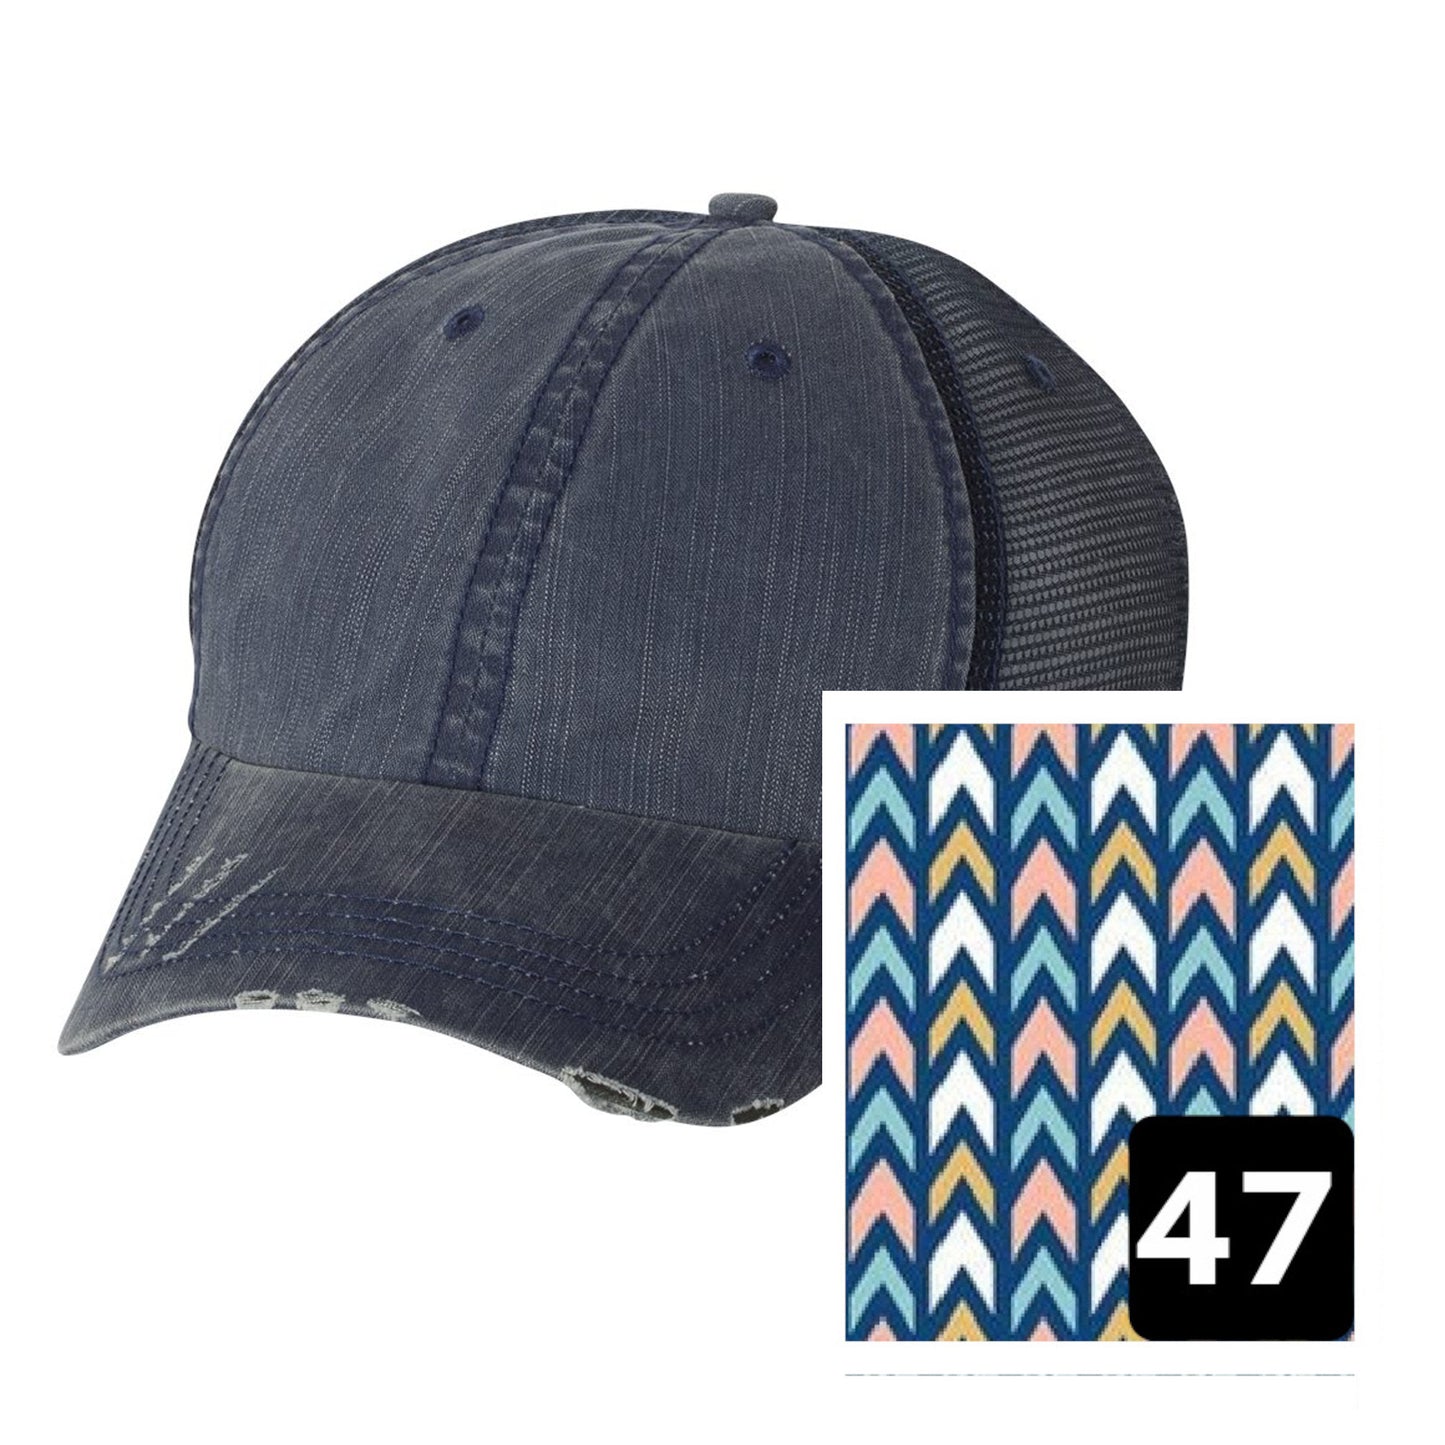 Oklahoma Hat | Navy Distressed Trucker Cap | Many Fabric Choices